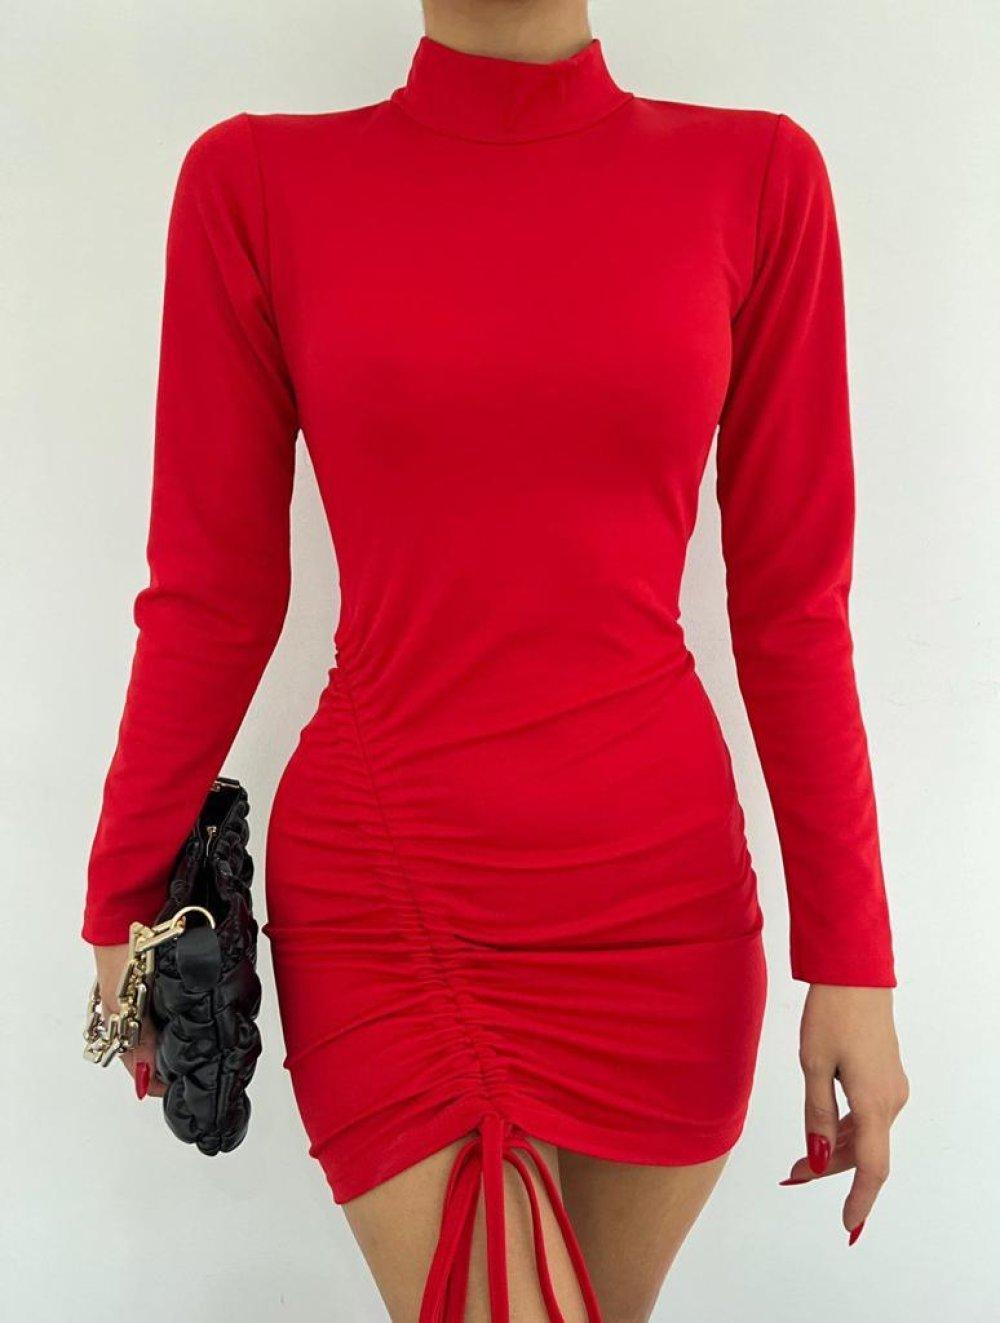 Yandan Kanallı Elbise 1098 Kırmızı